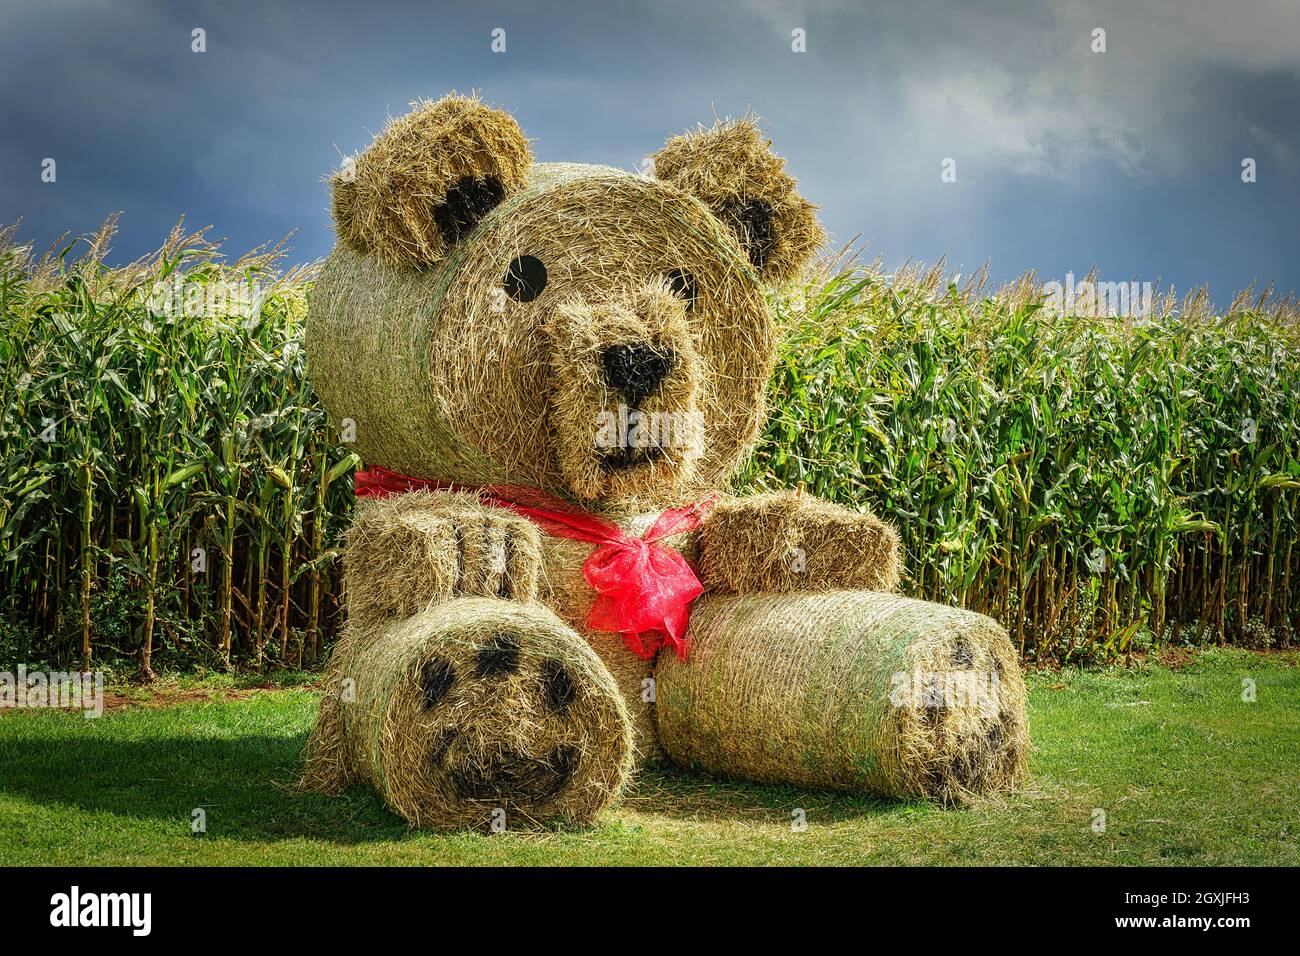 Un ours en peluche géant fait de balles de paille dans une ferme d'automne  Photo Stock - Alamy